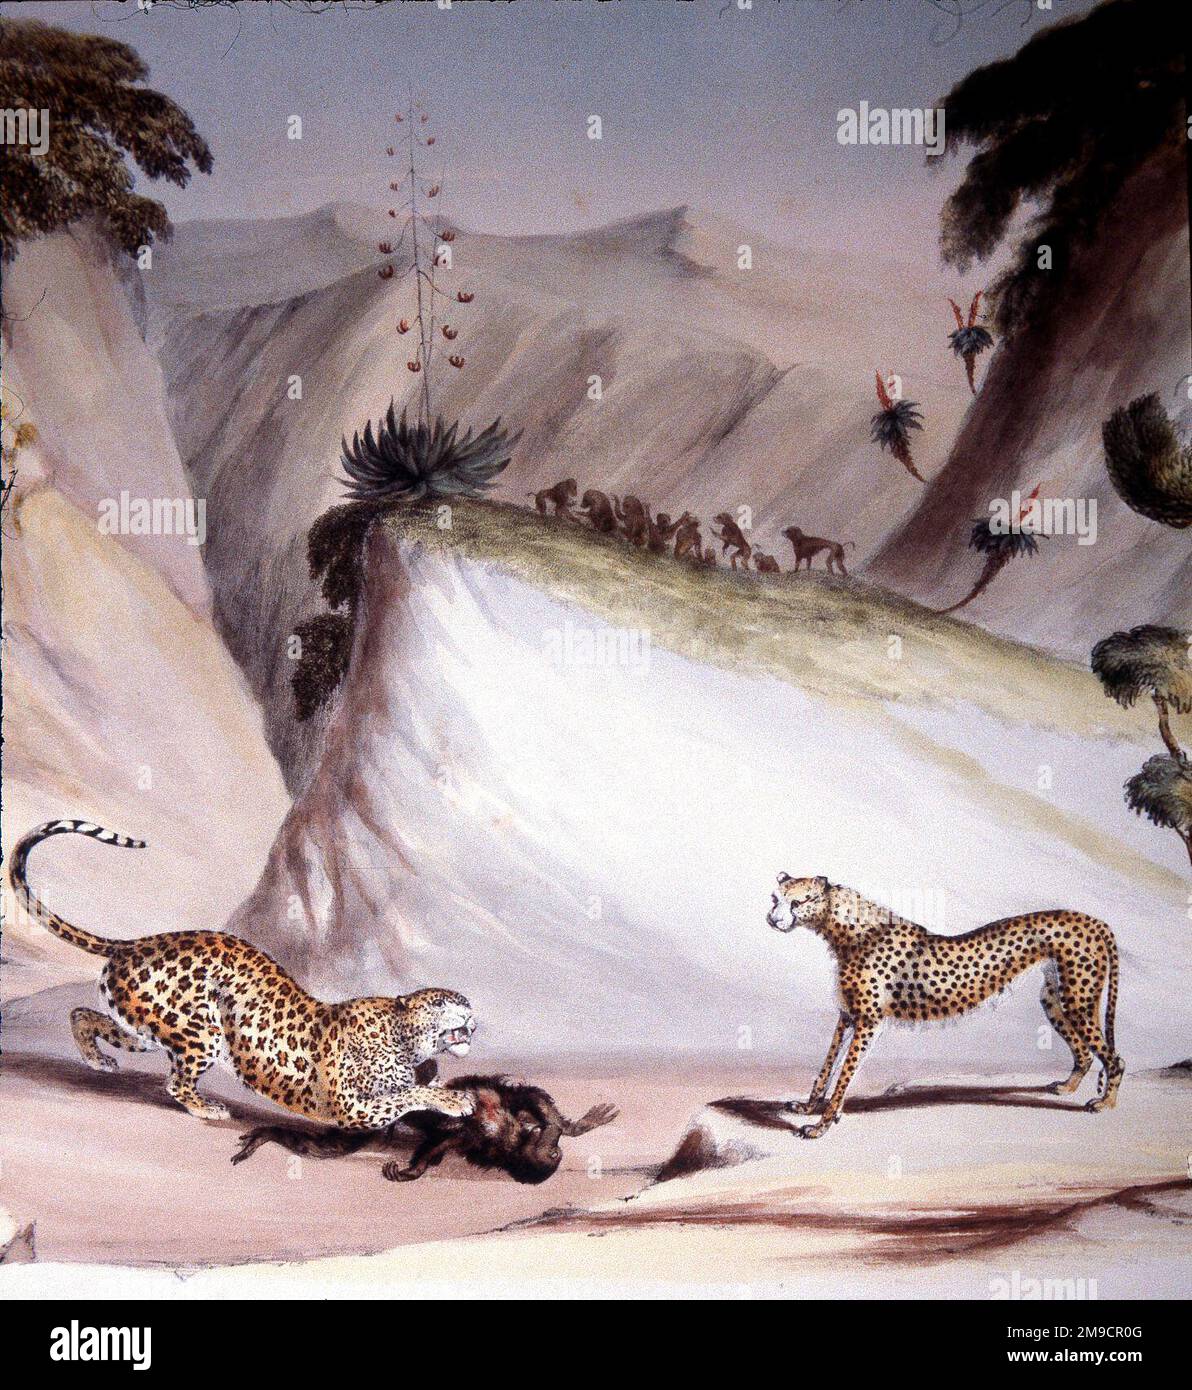 Portraits du gibier et des animaux sauvages de l'Afrique australe - proies de chasse au léopard Banque D'Images